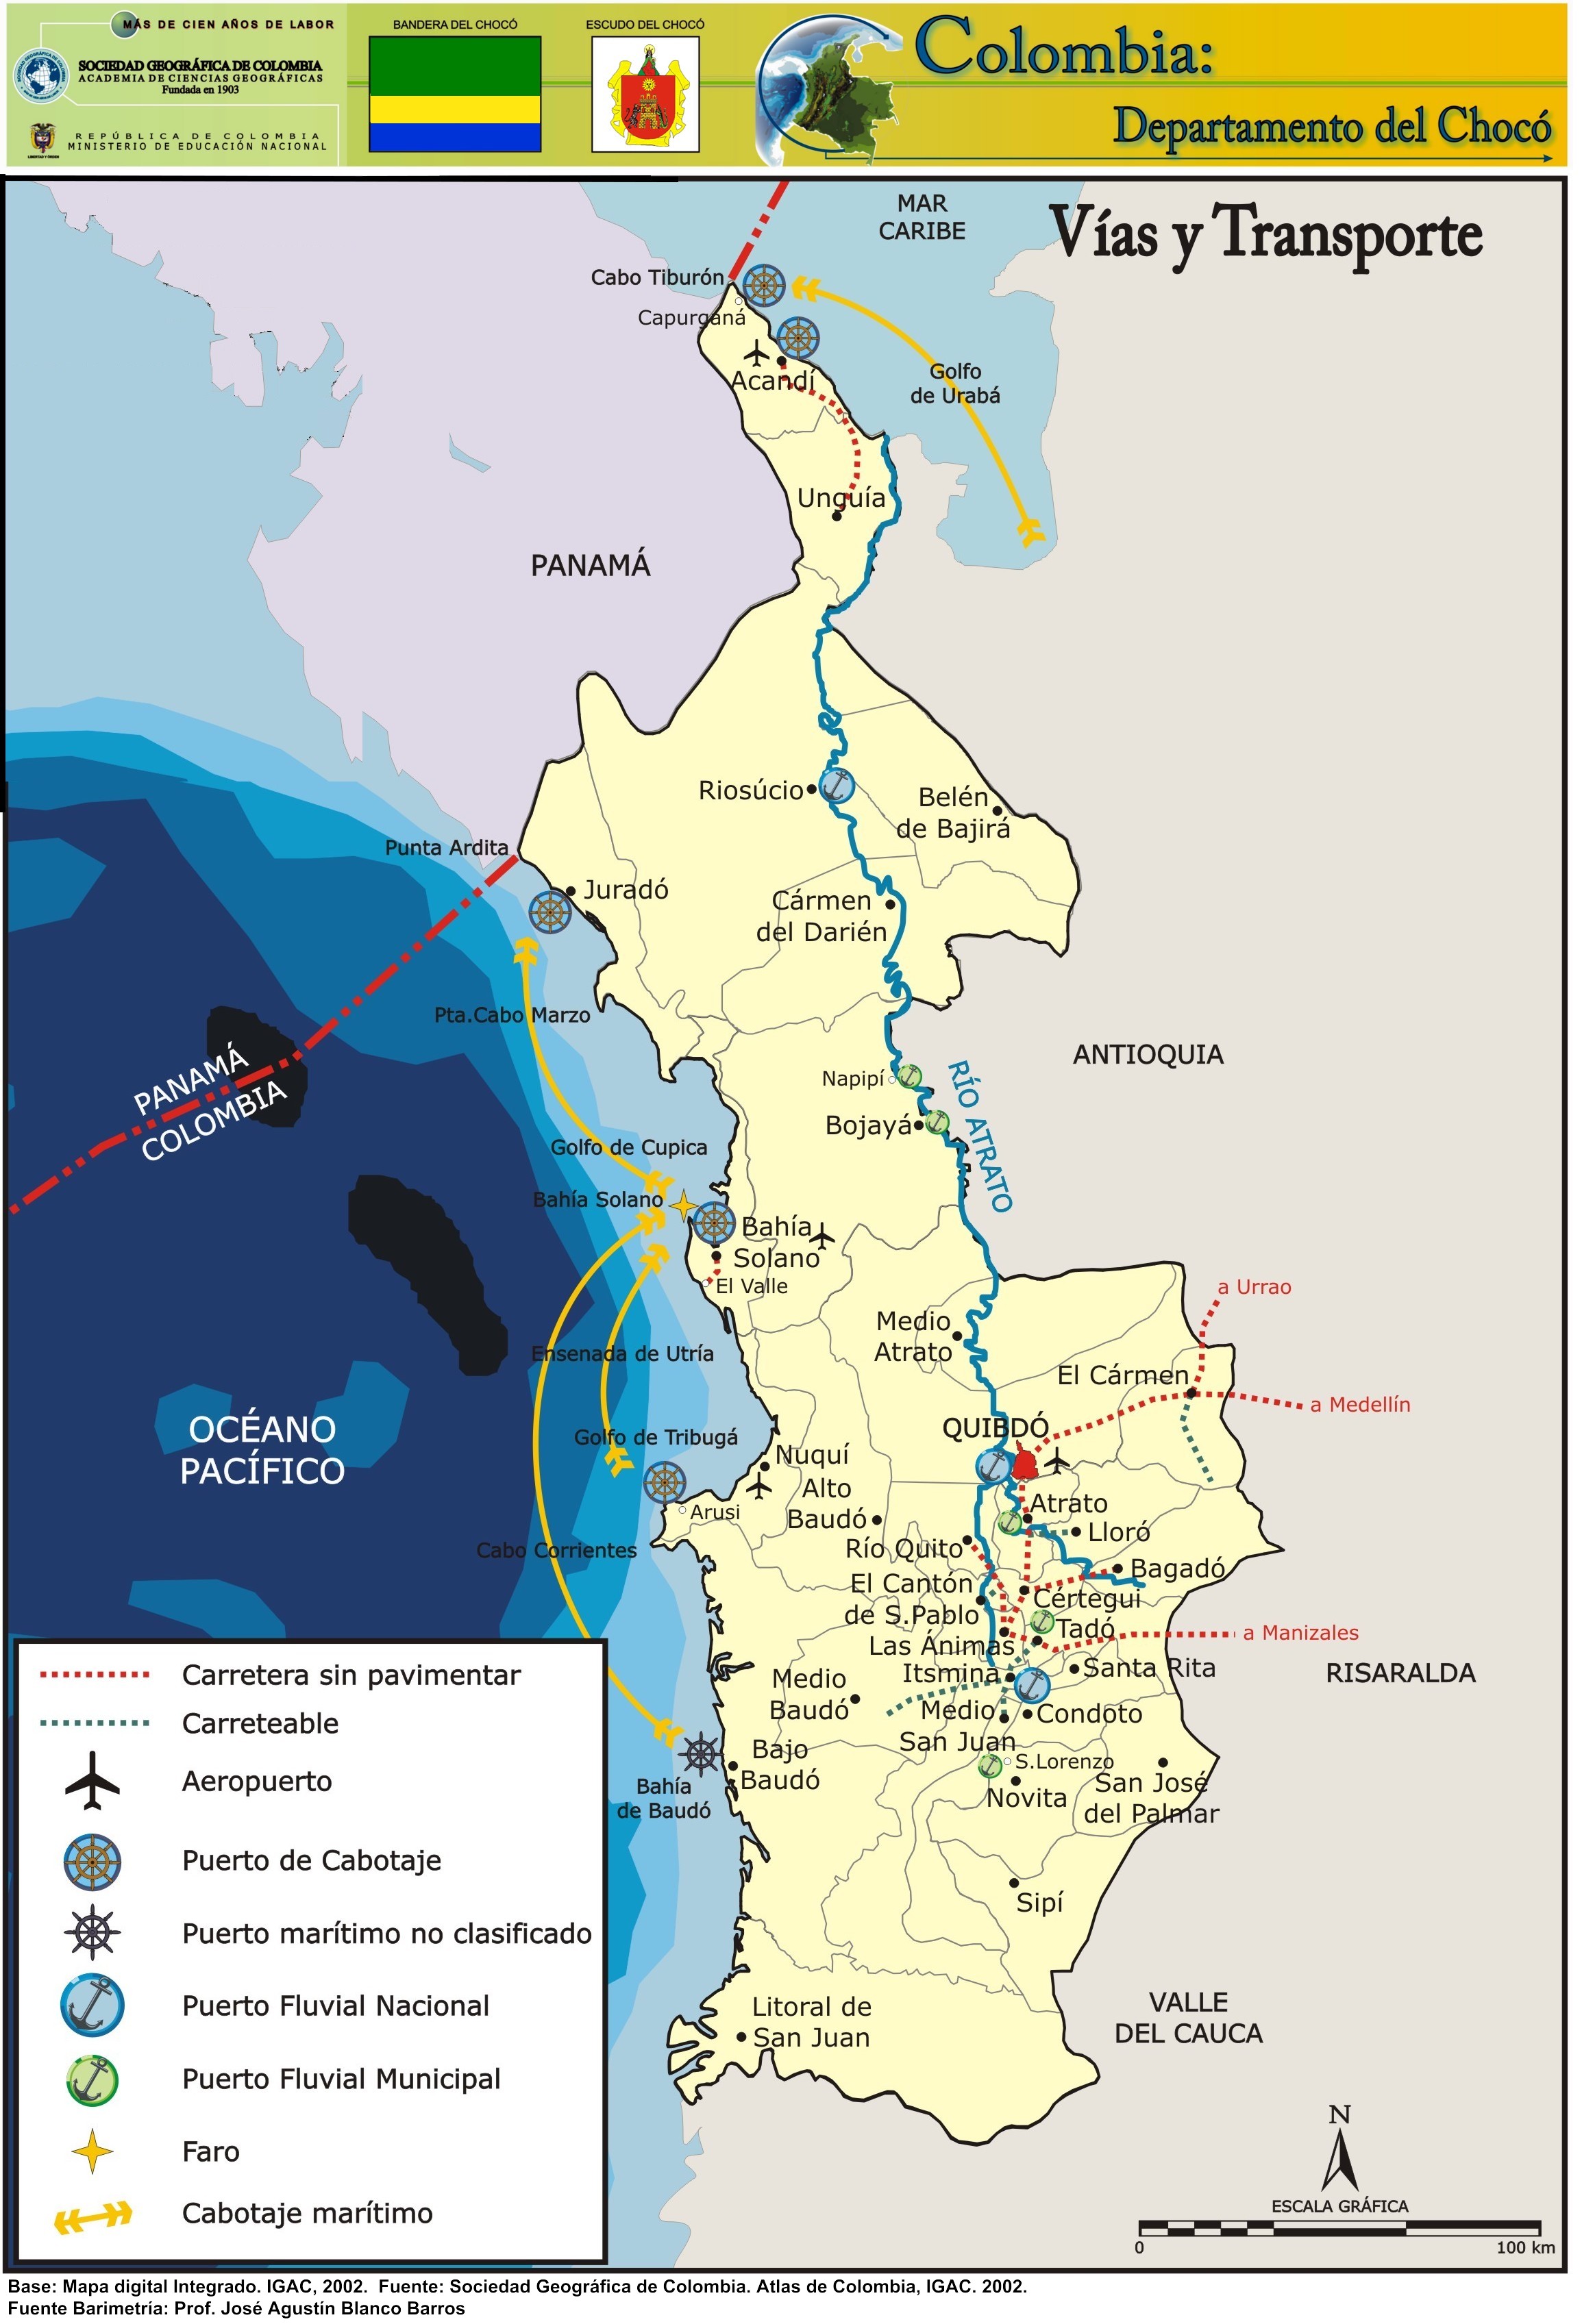 El Chocó - Región del Pacífico, Colombia - Foro América del Sur